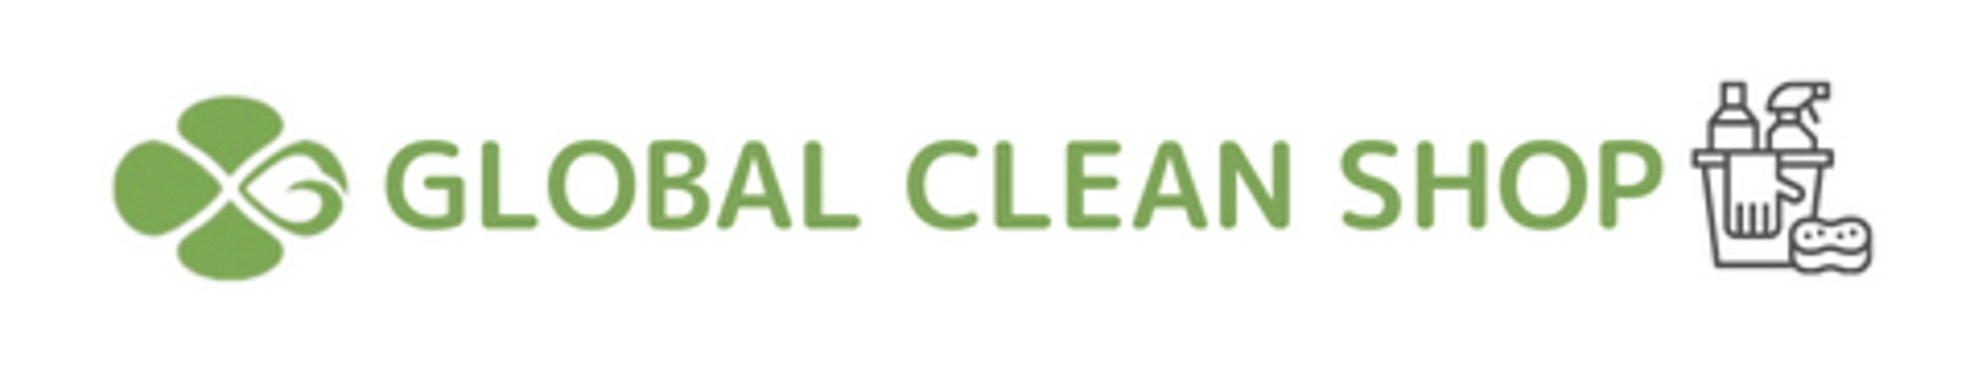 GLOBAL CLEAN SHOP〜人に優しく、地球に優しく。すべては「きれい」のために。 あなたのまわりの「きれい」のお手伝いをいたします。〜